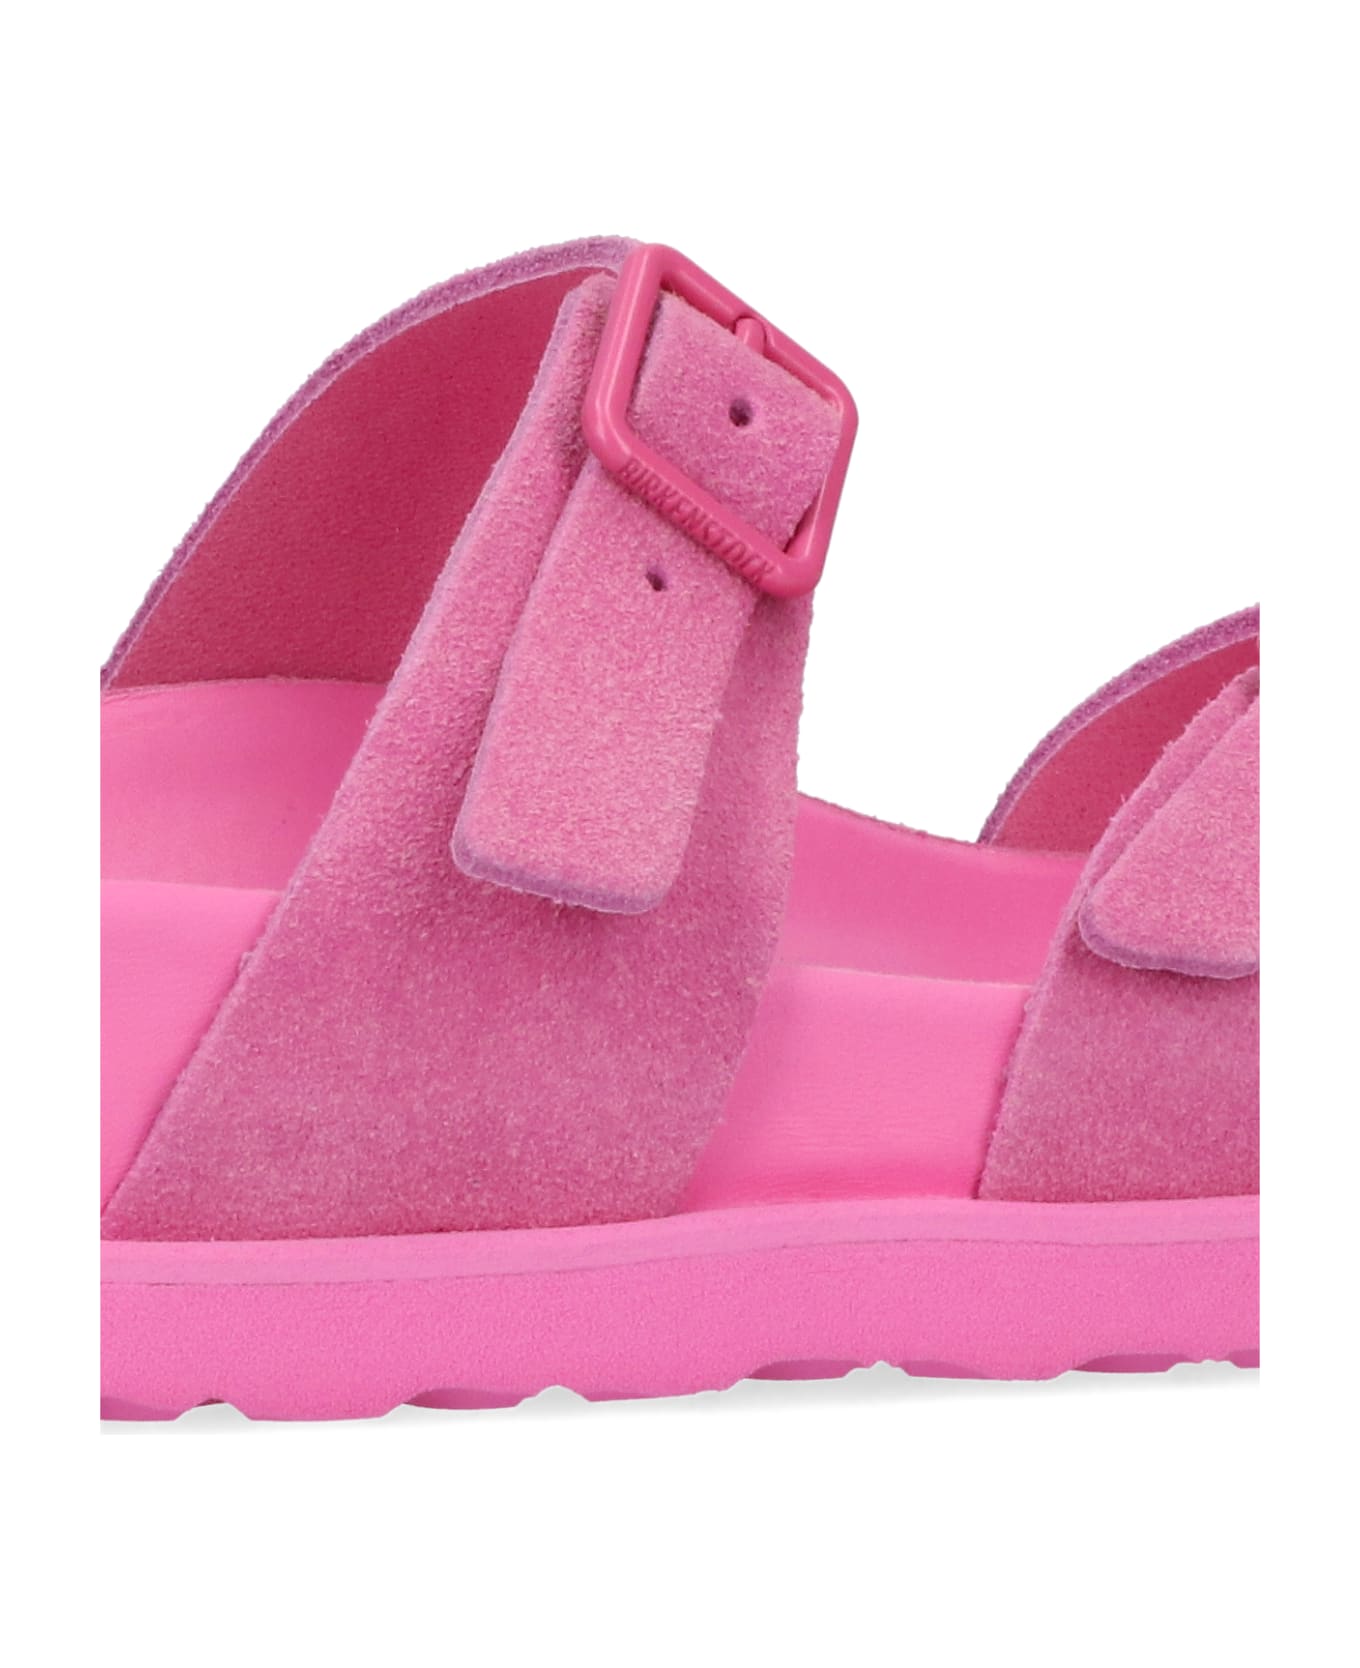 Birkenstock Arizona Suede Effect Sandals - Pink